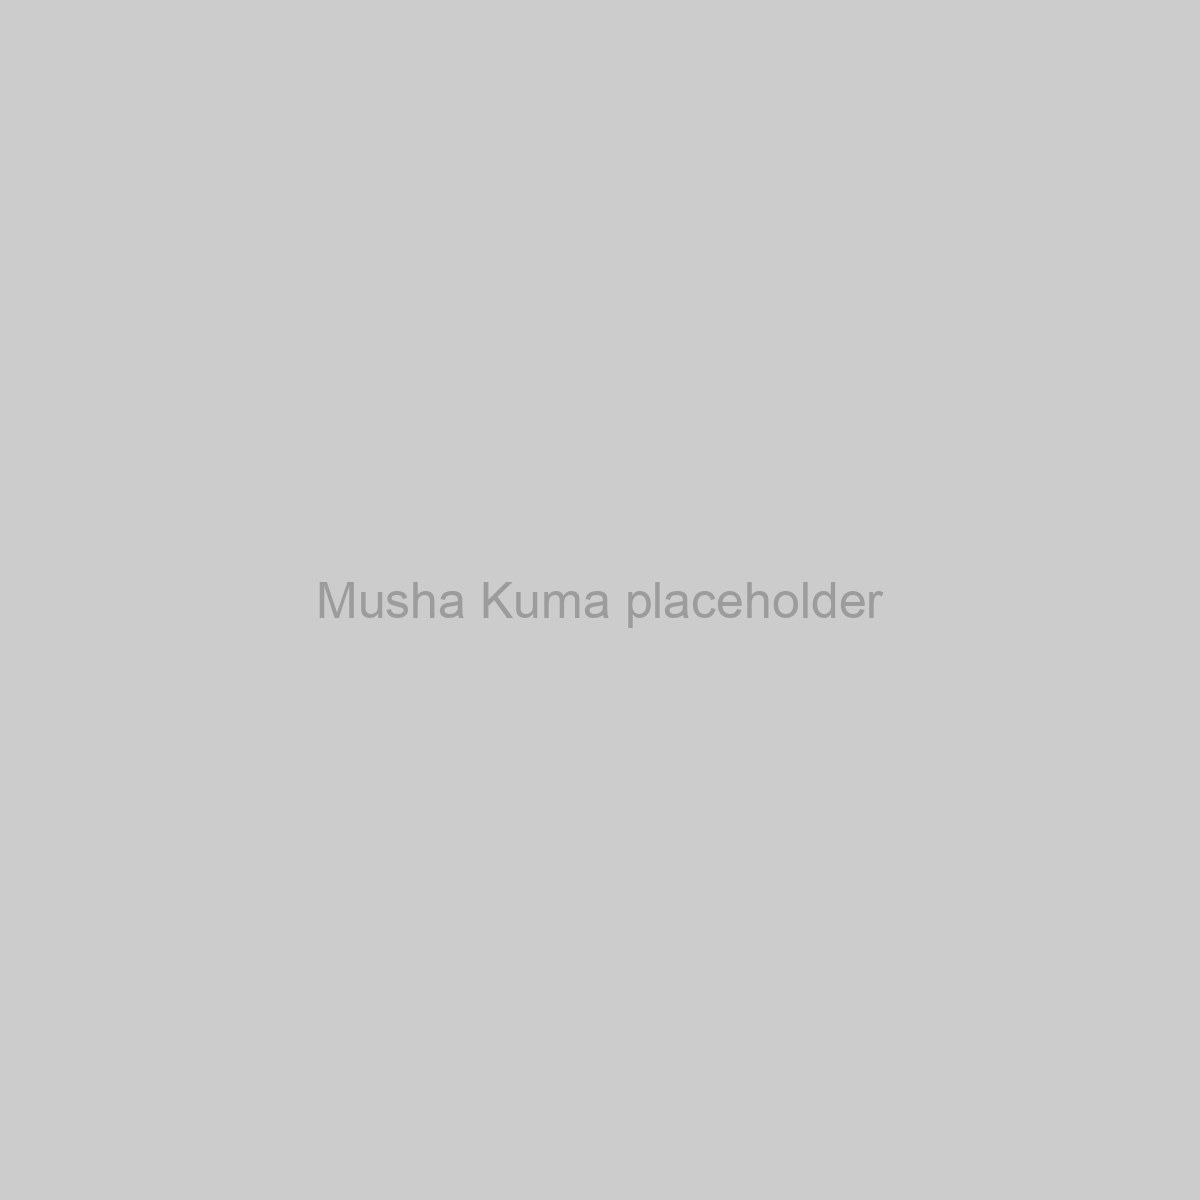 Musha Kuma Placeholder Image